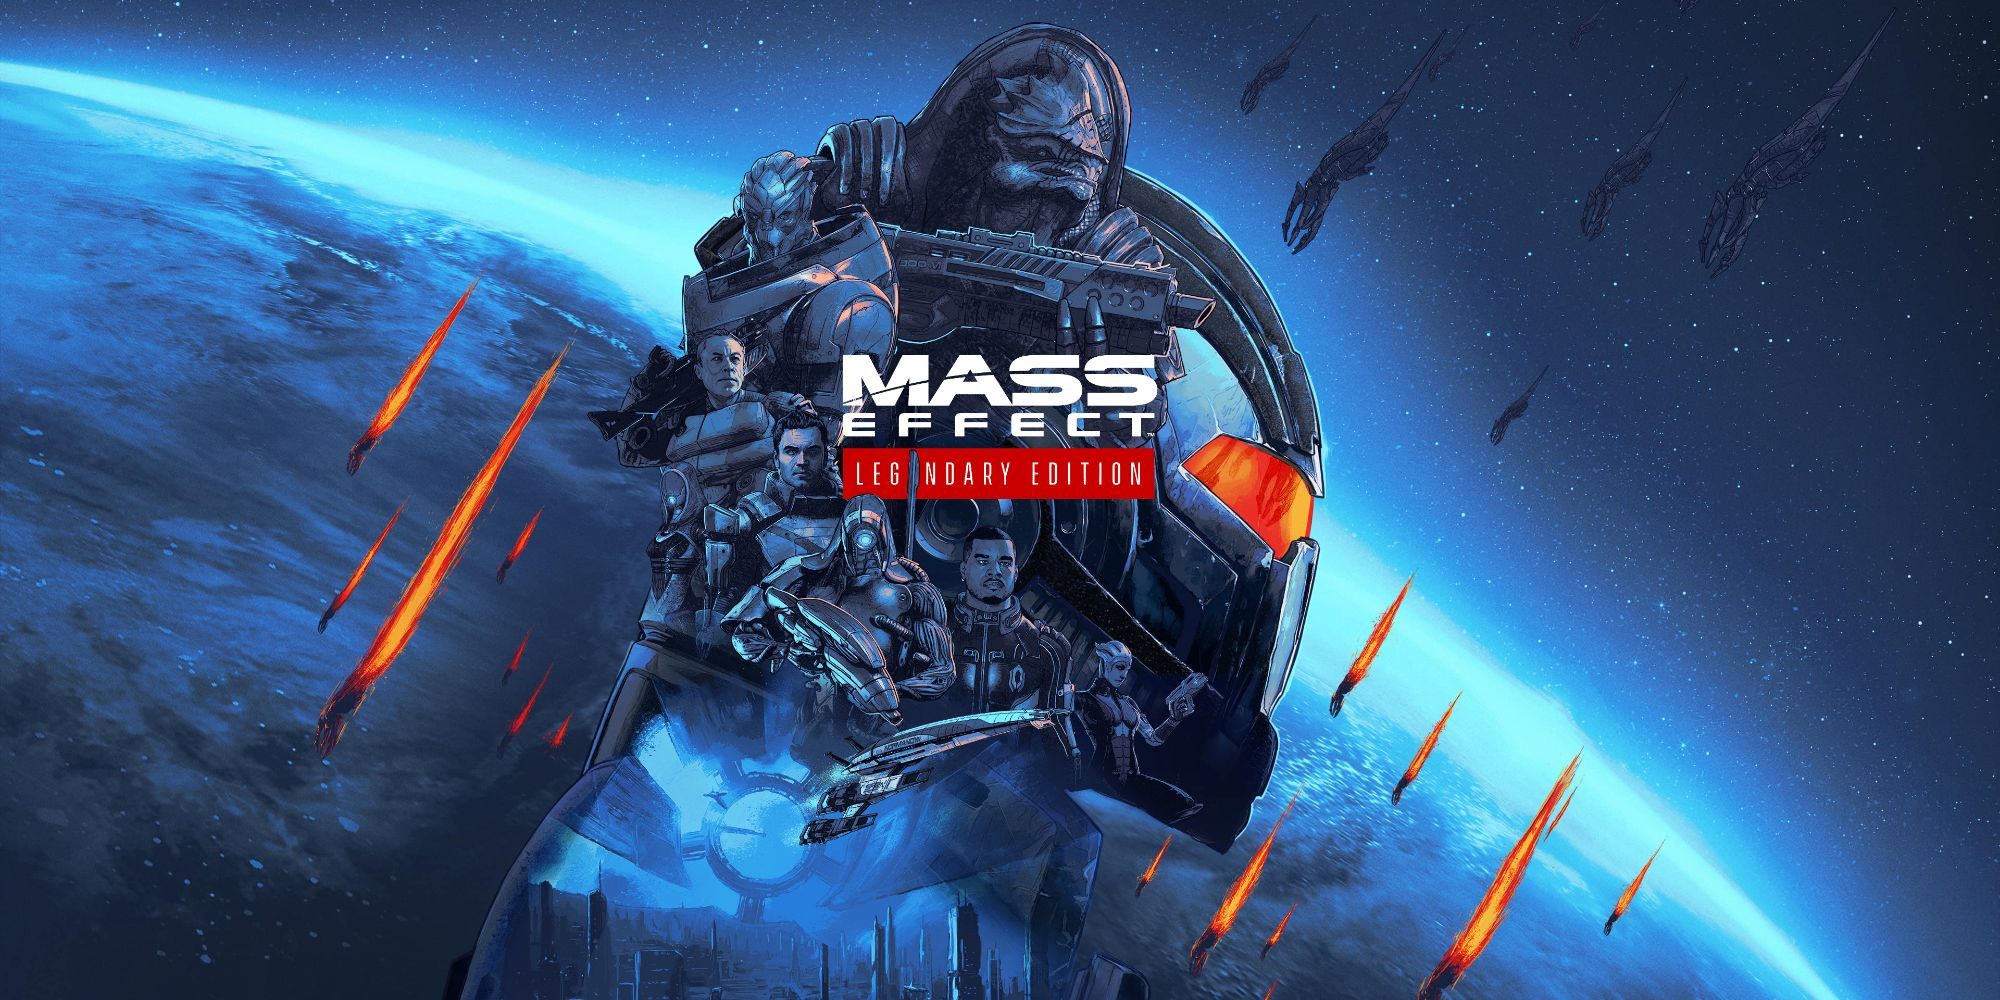 cartaz para o jogo Mass Effect Legendary Edition com Garrus Vakarian e outros personagens